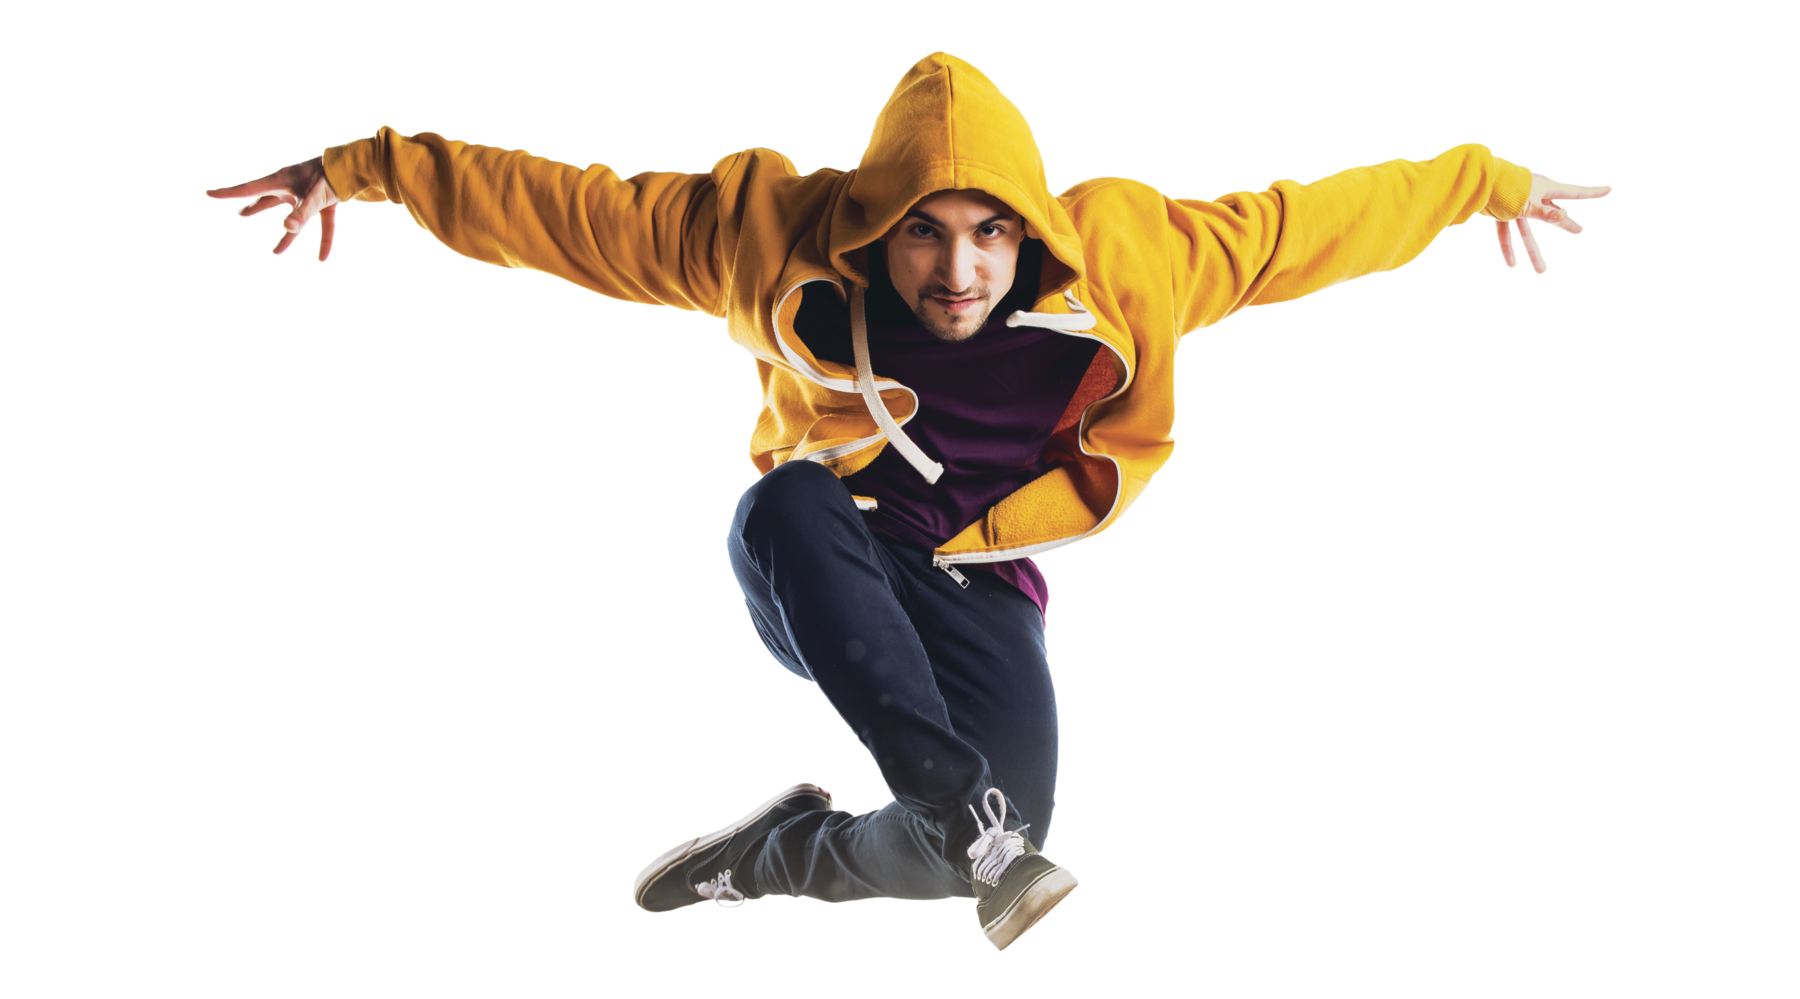 Fotografia. Rapaz  com casaco de capuz amarelo, calça jeans e tênis. Ele salta com os braços estendidos na horizontal e com as pernas flexionadas no ar.